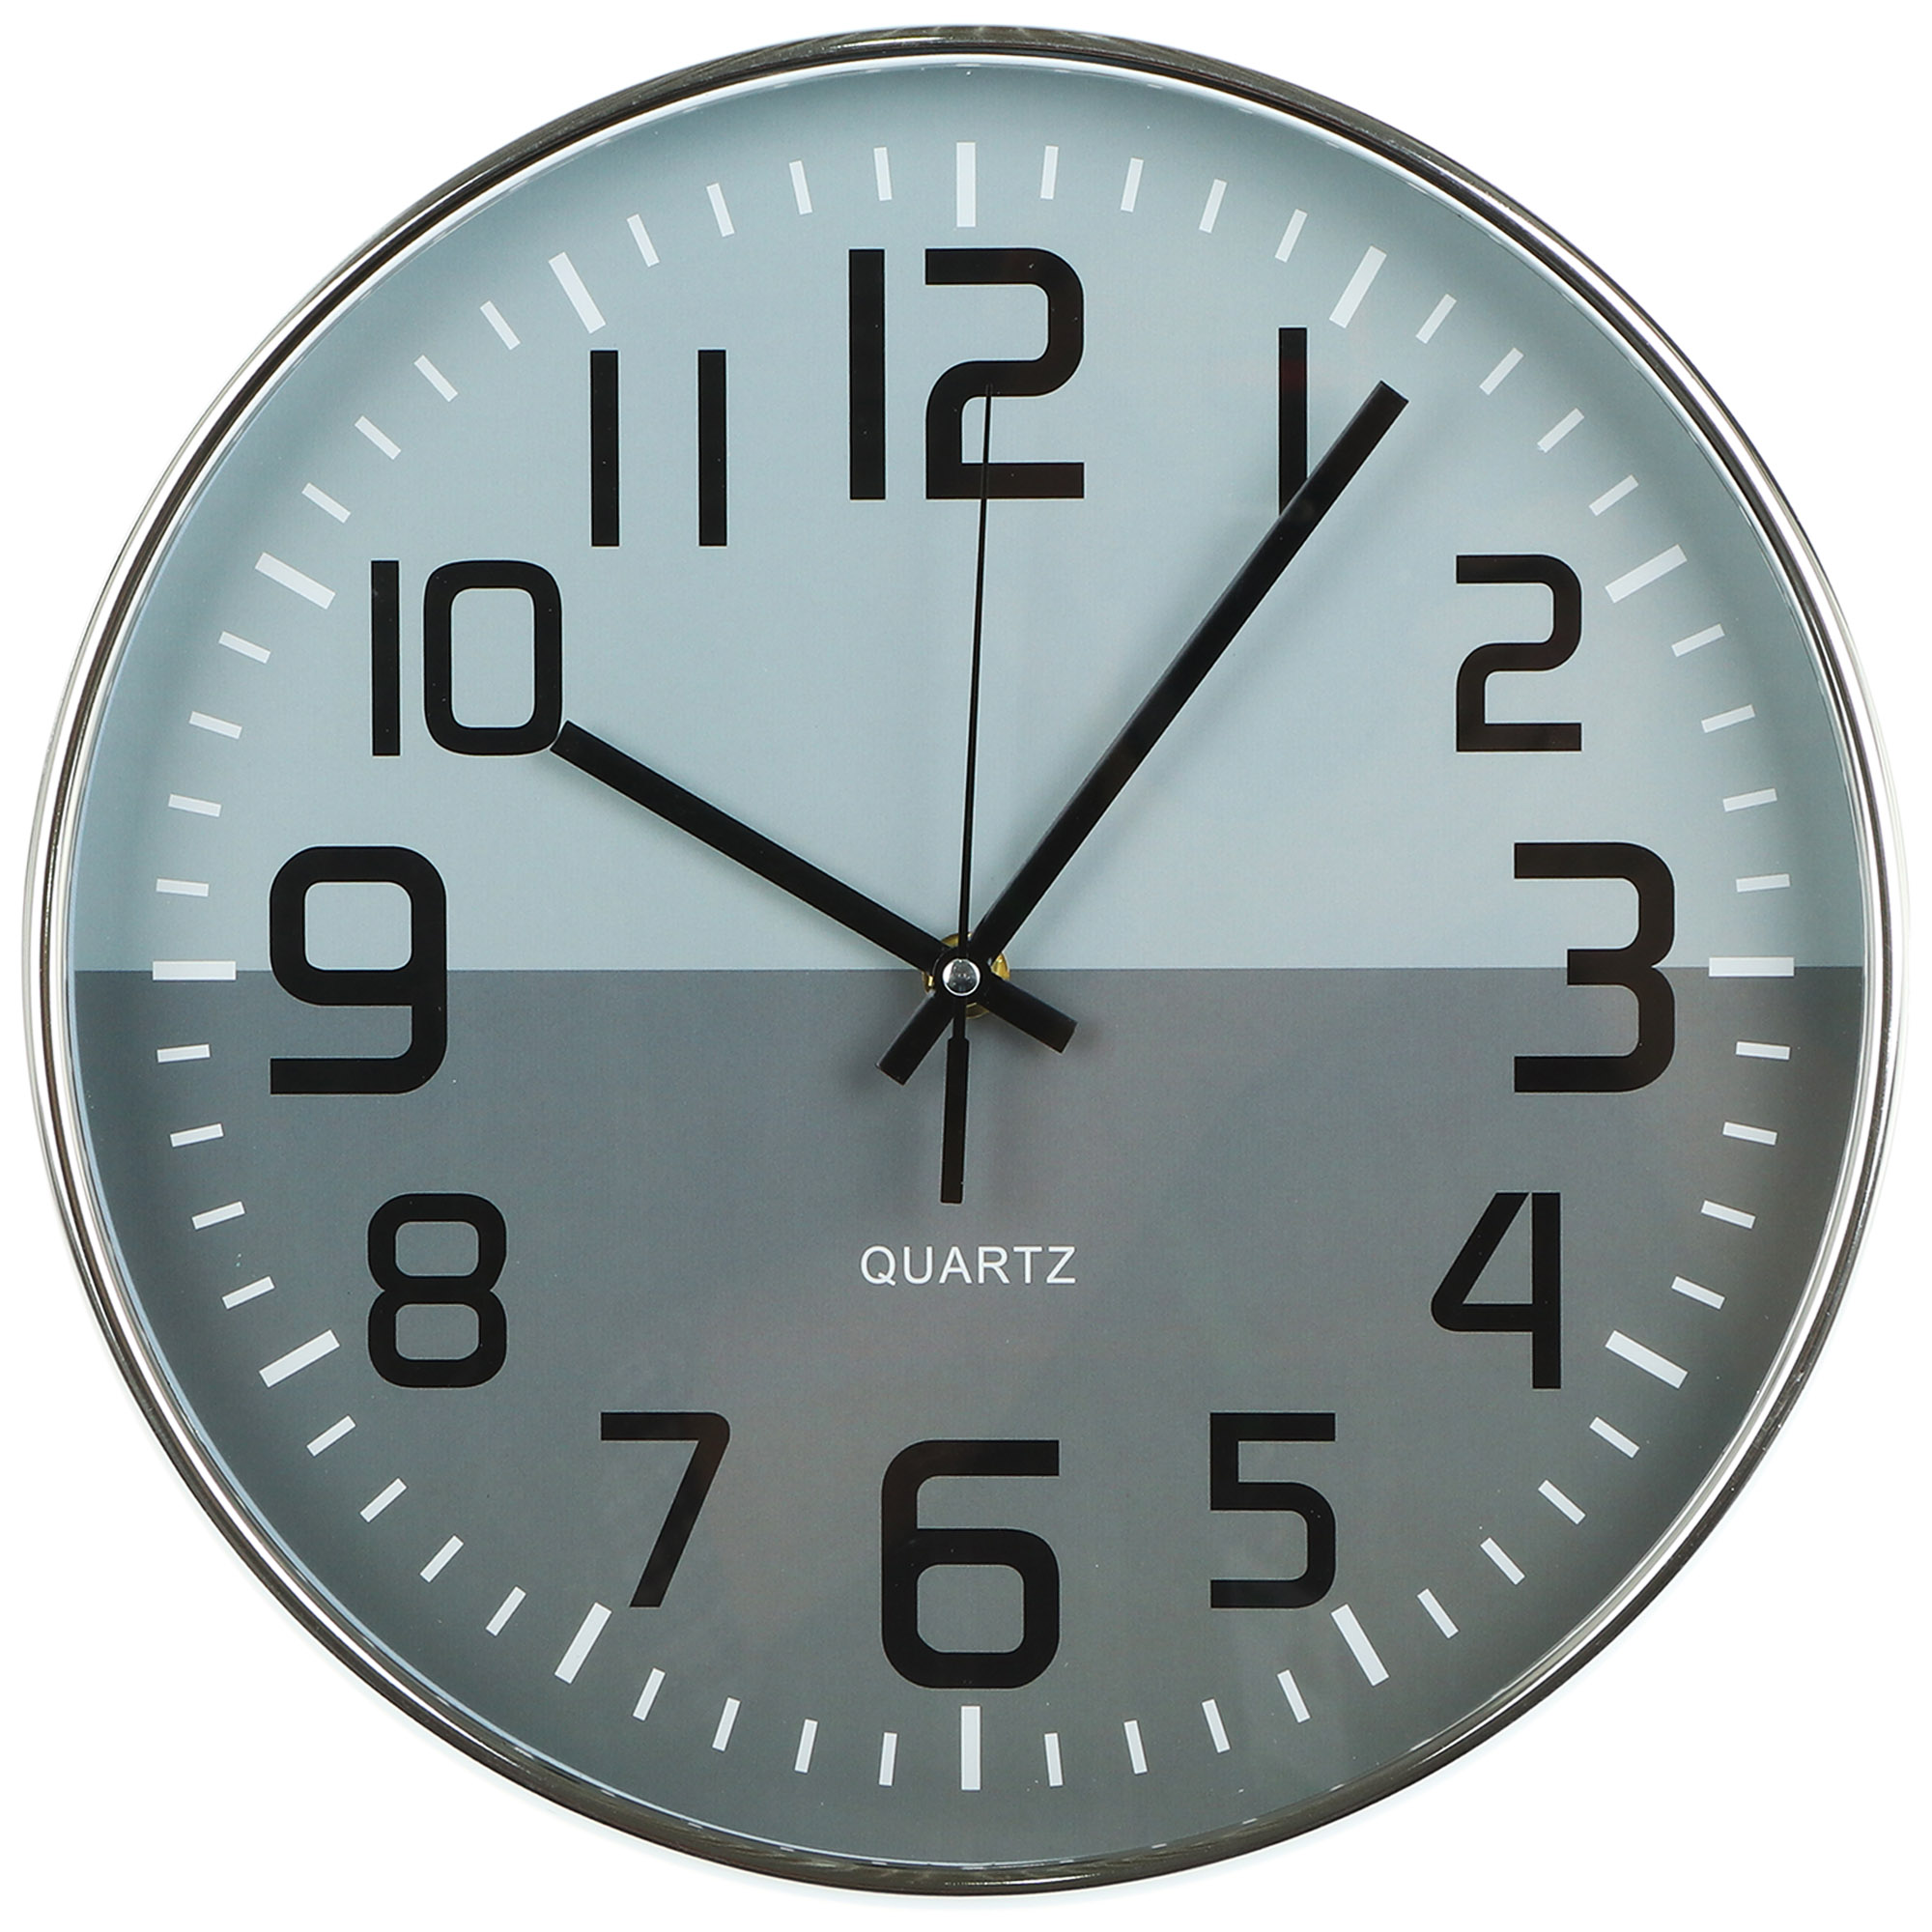 Часы настенные Kanglijia Clock серебряные 30,5х4,3х30,5 см часы настенные troyka 11170113 круг белые серебристая рамка 29х29х3 5 см